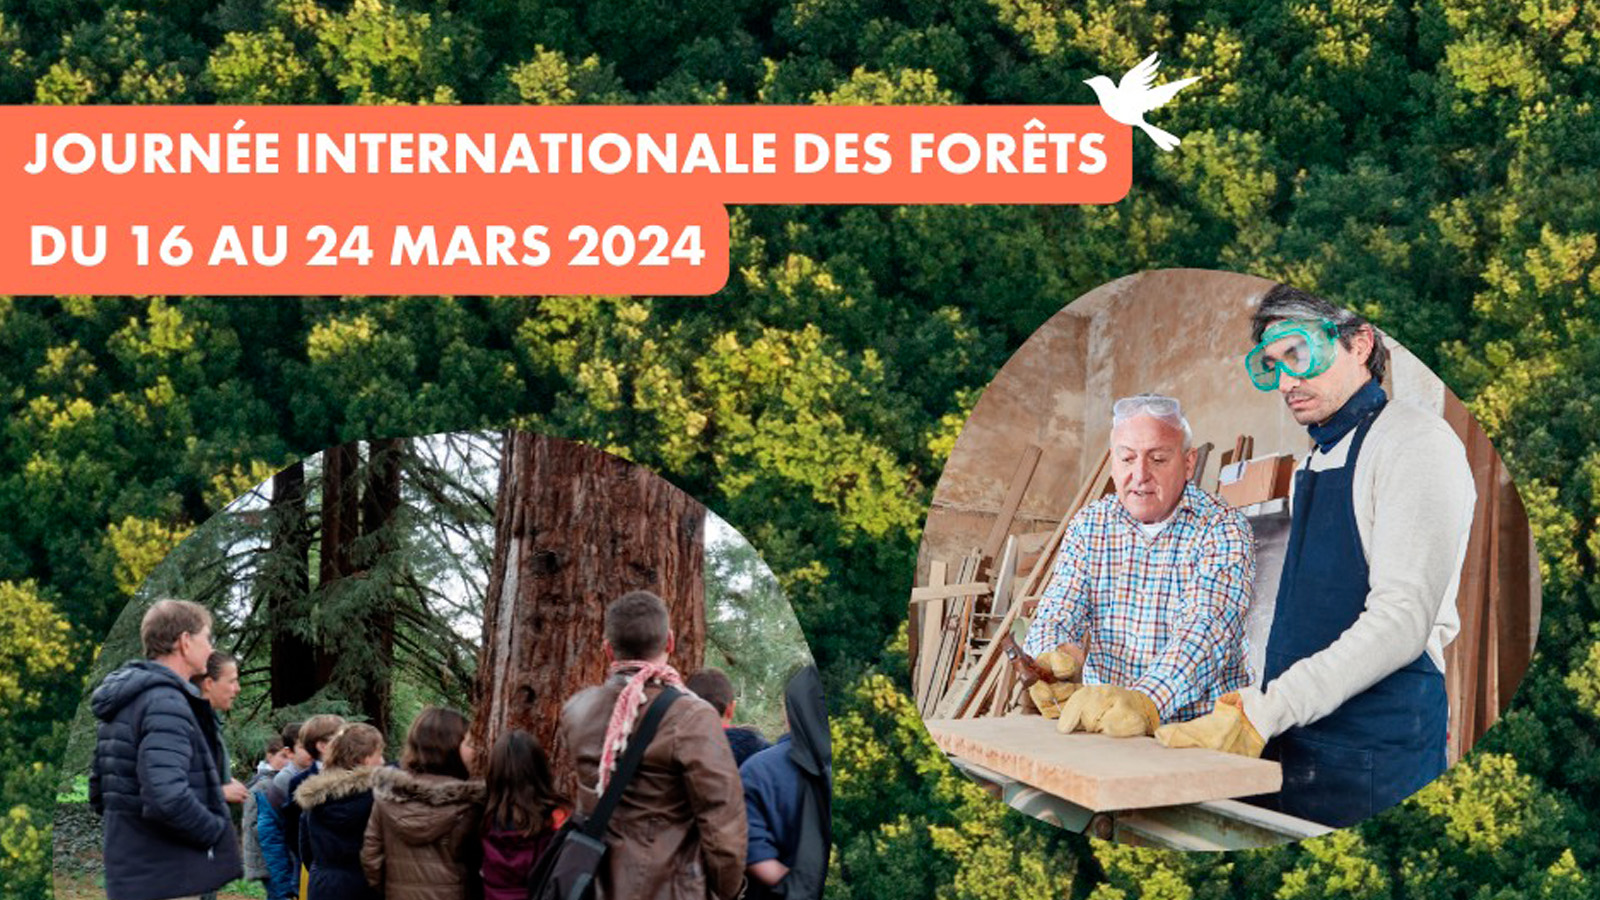 Les sorties nature près de chez vous pour la Journée internationale des forêts !